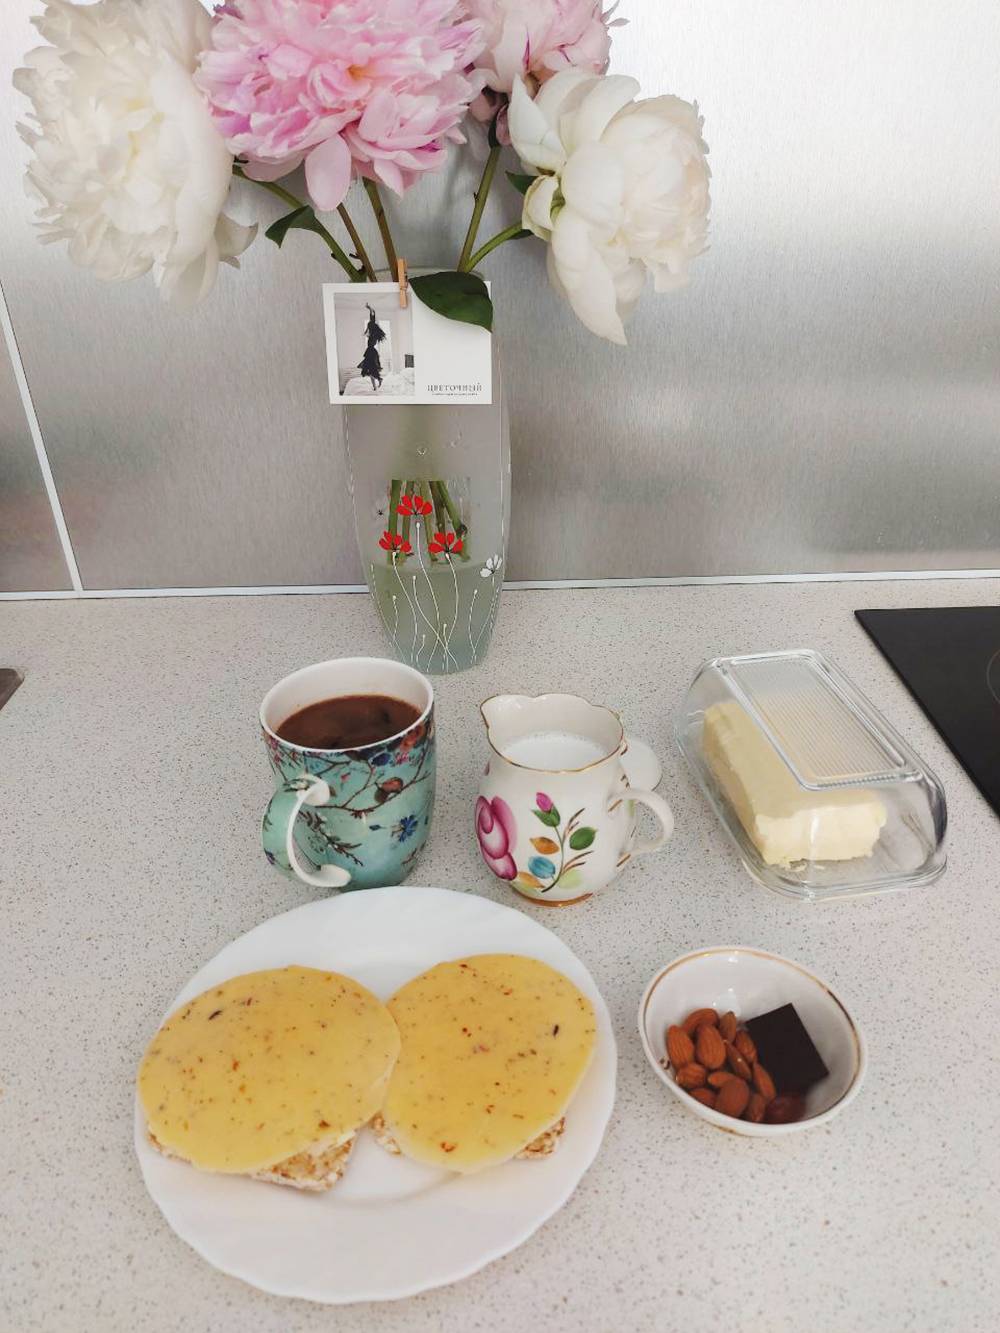 Завтрак: бутерброды с сыром и маслом, миндаль, шоколад, кофе и лецитин